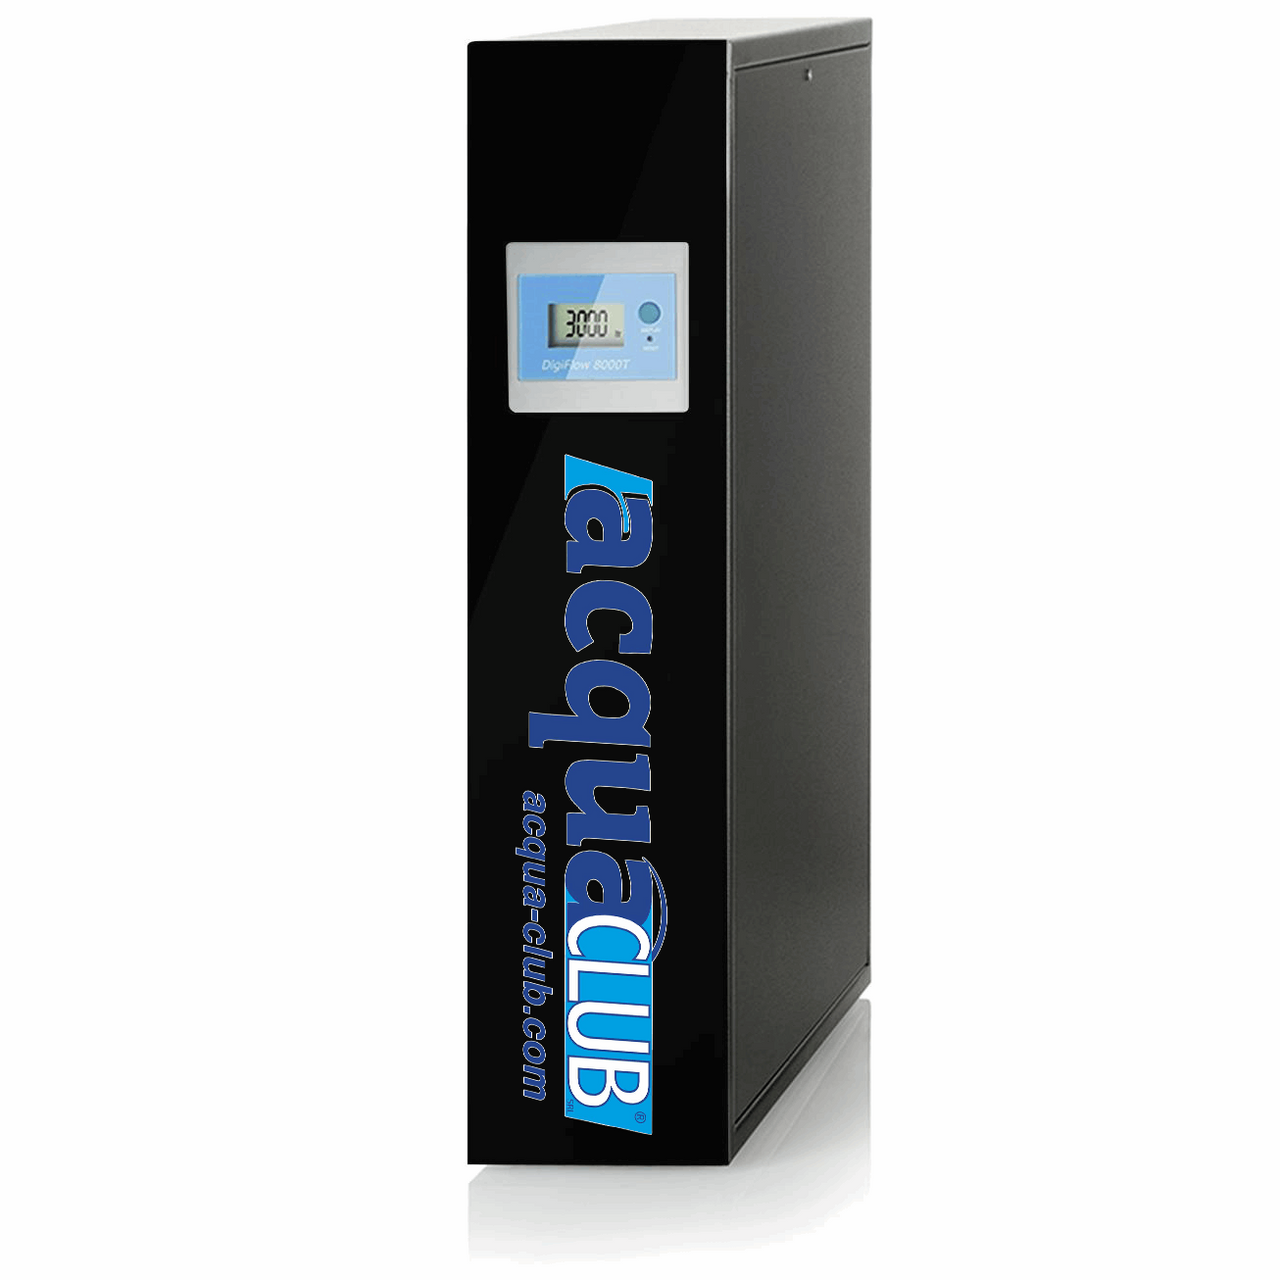 AcquaClub-Ultra, Depuratore Acqua ad Ultrafiltrazione - Sottobanco